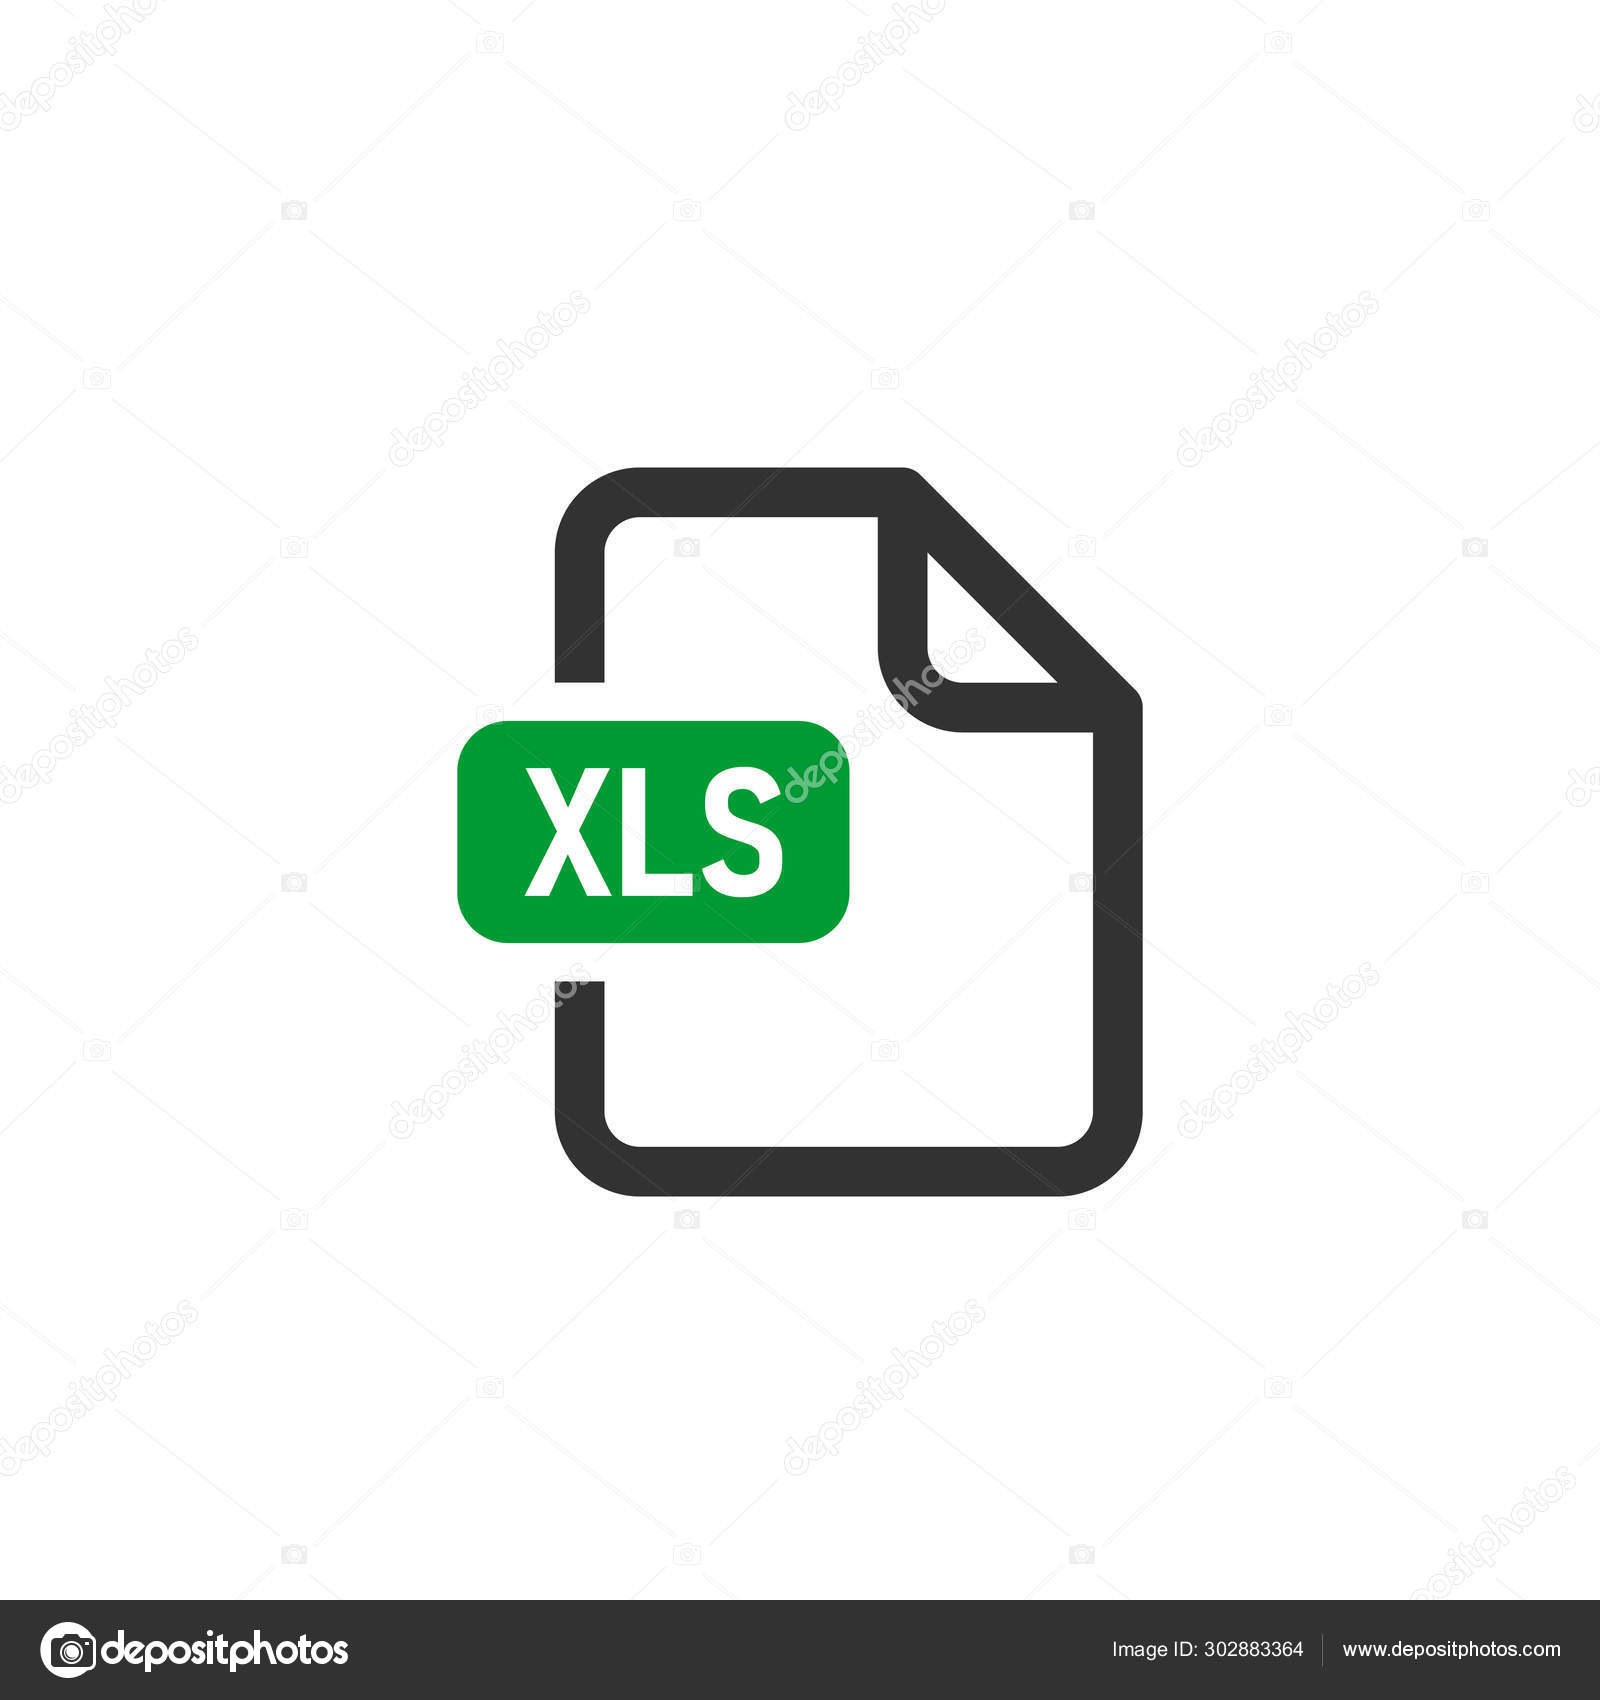 Tải file định dạng tài liệu Excel đã trở nên đơn giản hơn bao giờ hết với bức ảnh liên quan đến từ khóa này. Với tốc độ nhanh chóng và hướng dẫn chi tiết, chúng tôi sẽ giúp bạn tải về những định dạng tài liệu Excel một cách thuận tiện và dễ dàng. Hãy cùng chúng tôi trải nghiệm và khám phá nhiều hơn về định dạng tài liệu đa dạng này!